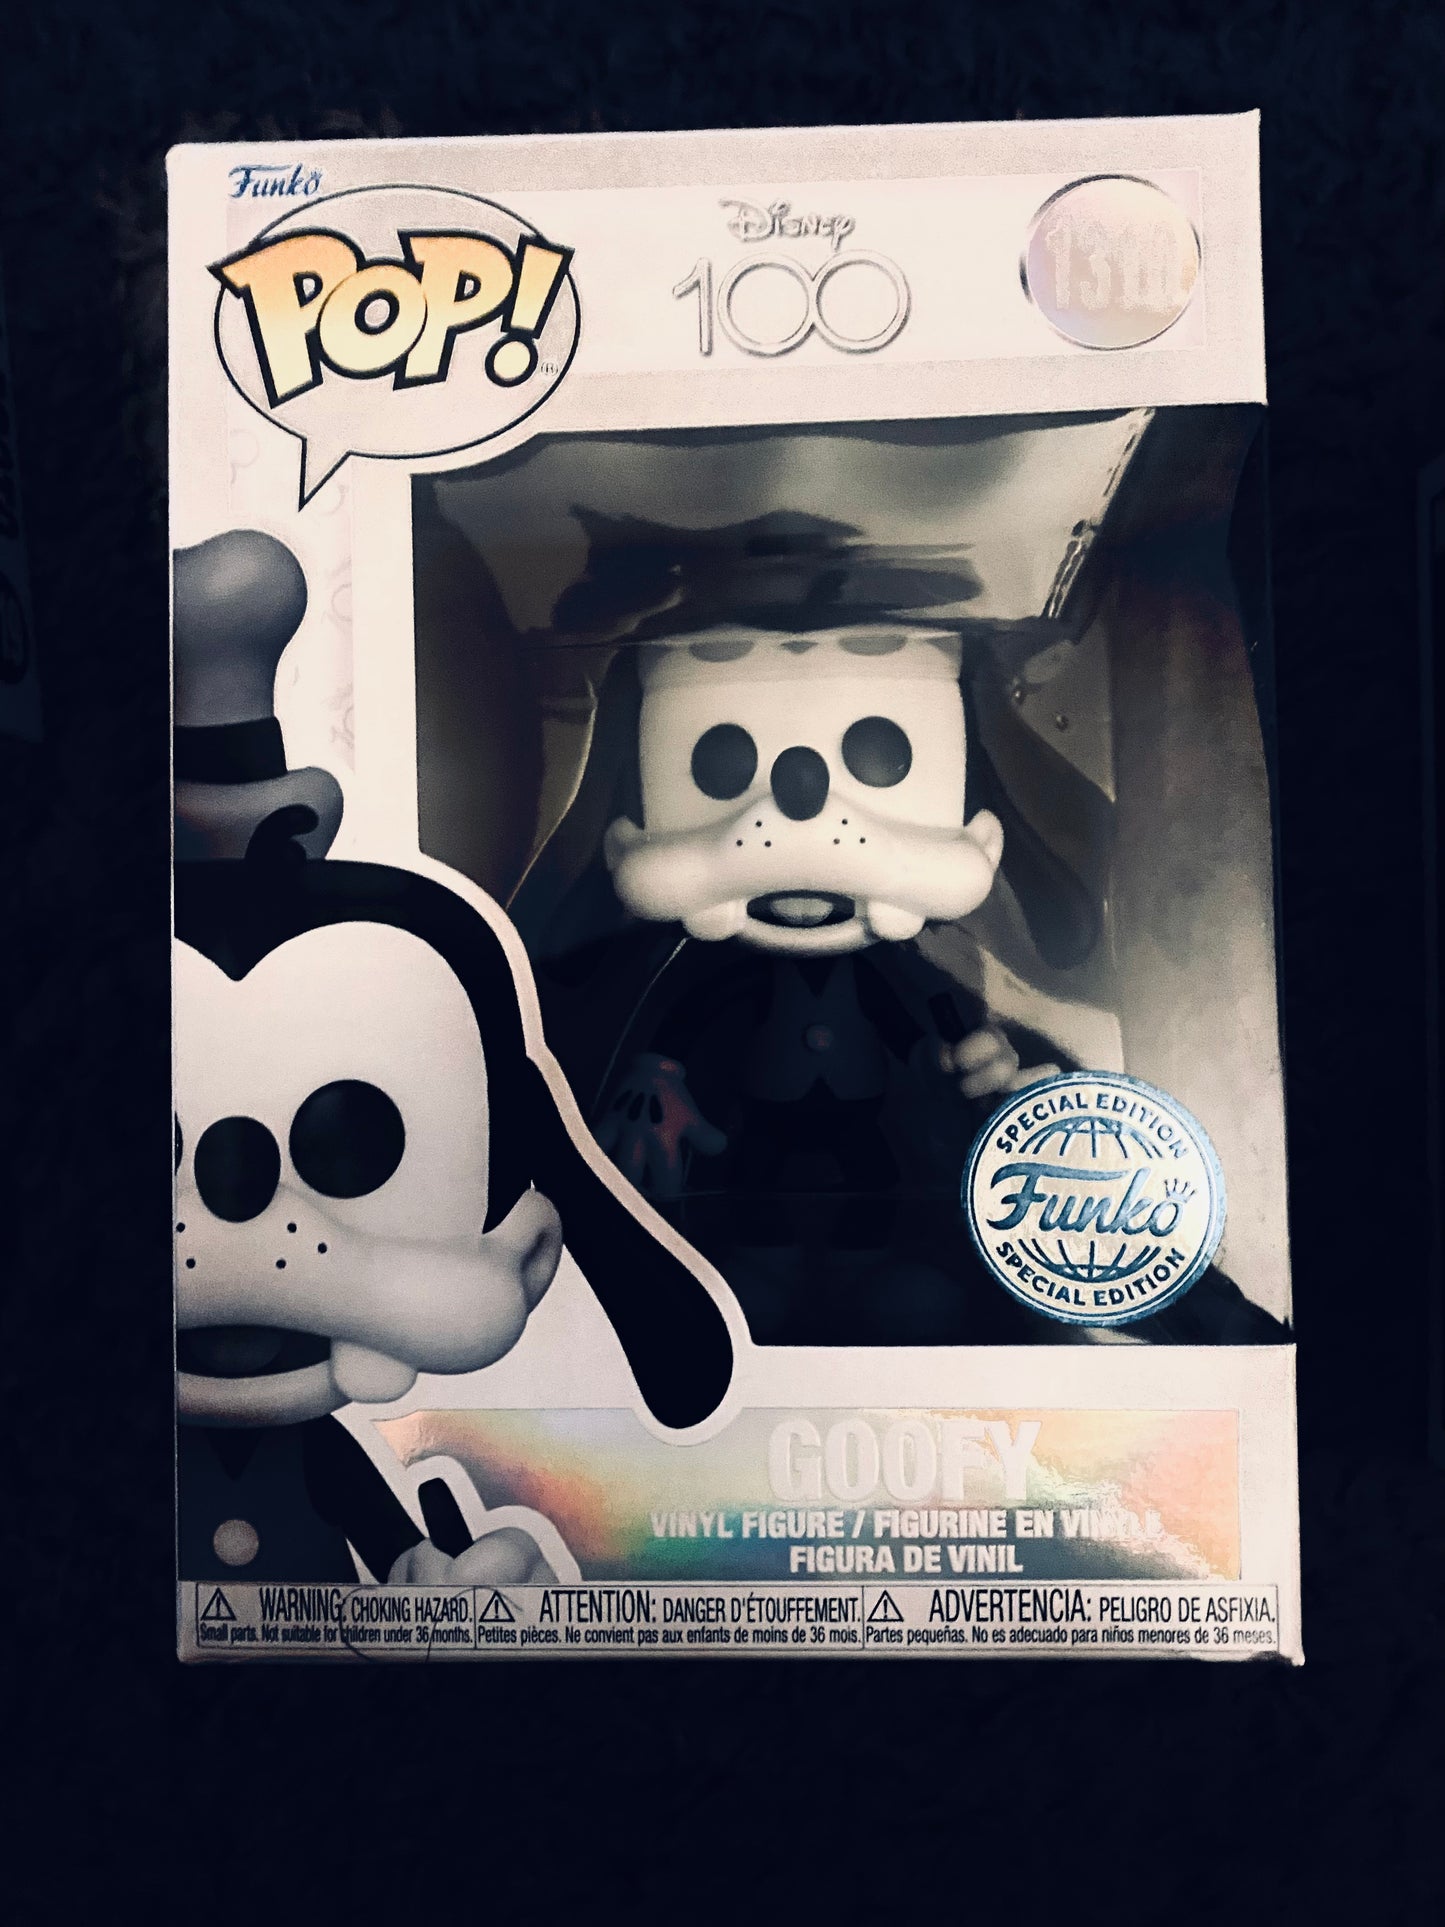 Funko Pop Exclusive Disney’s Goofy #1310